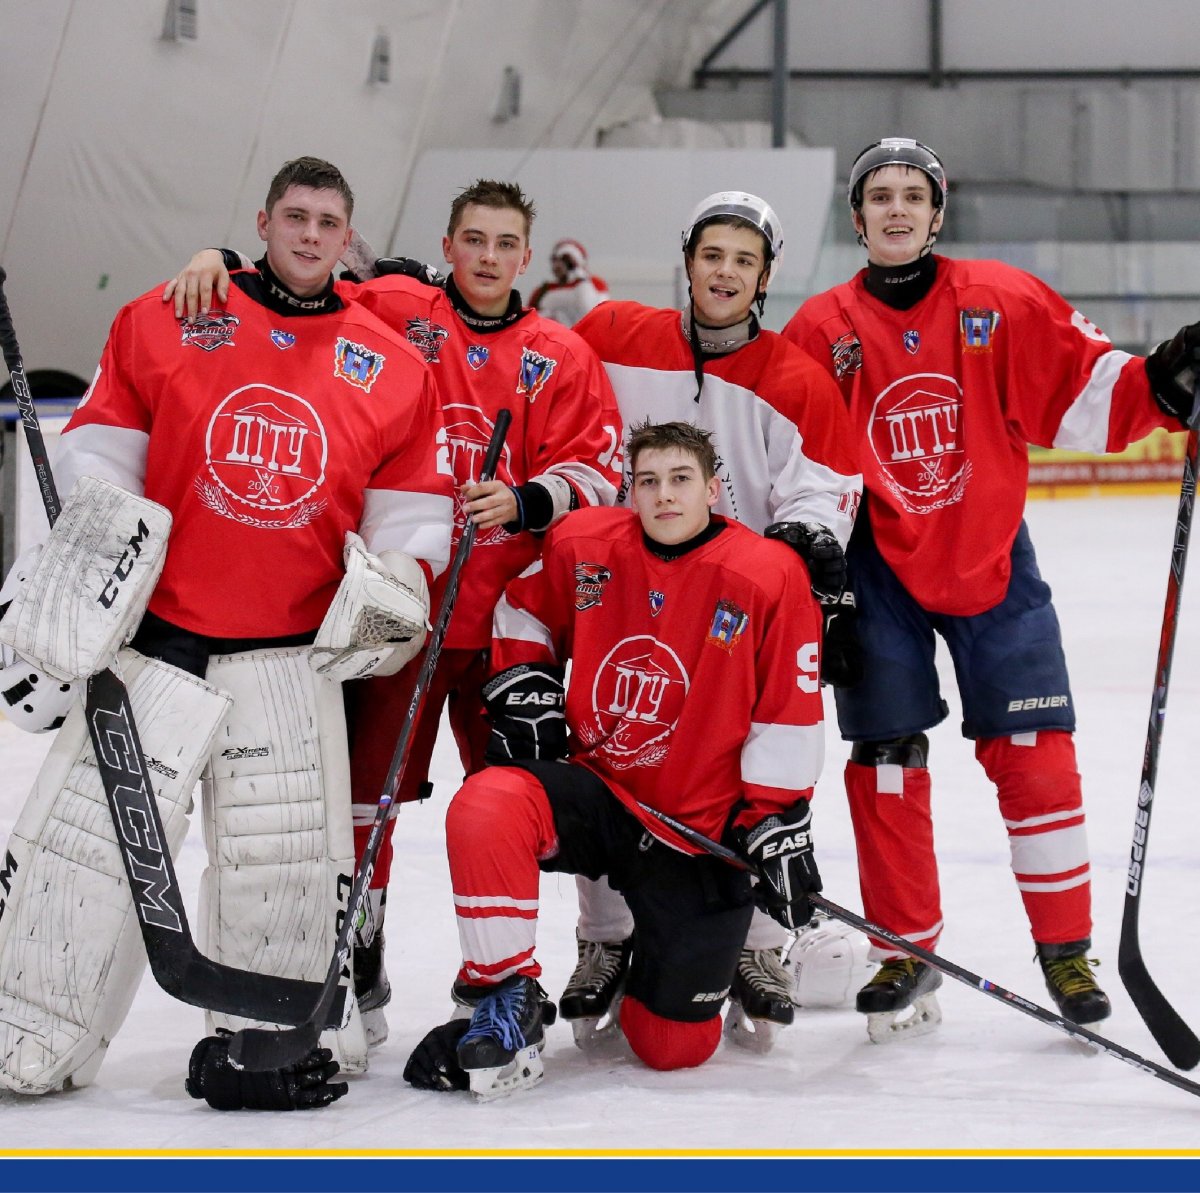 Любишь хоккей? Поддержи команду ДГТУ на ростовском туре Всероссийских соревнований по хоккею среди студентов «Первенство студенческой хоккейной лиги»!⛸